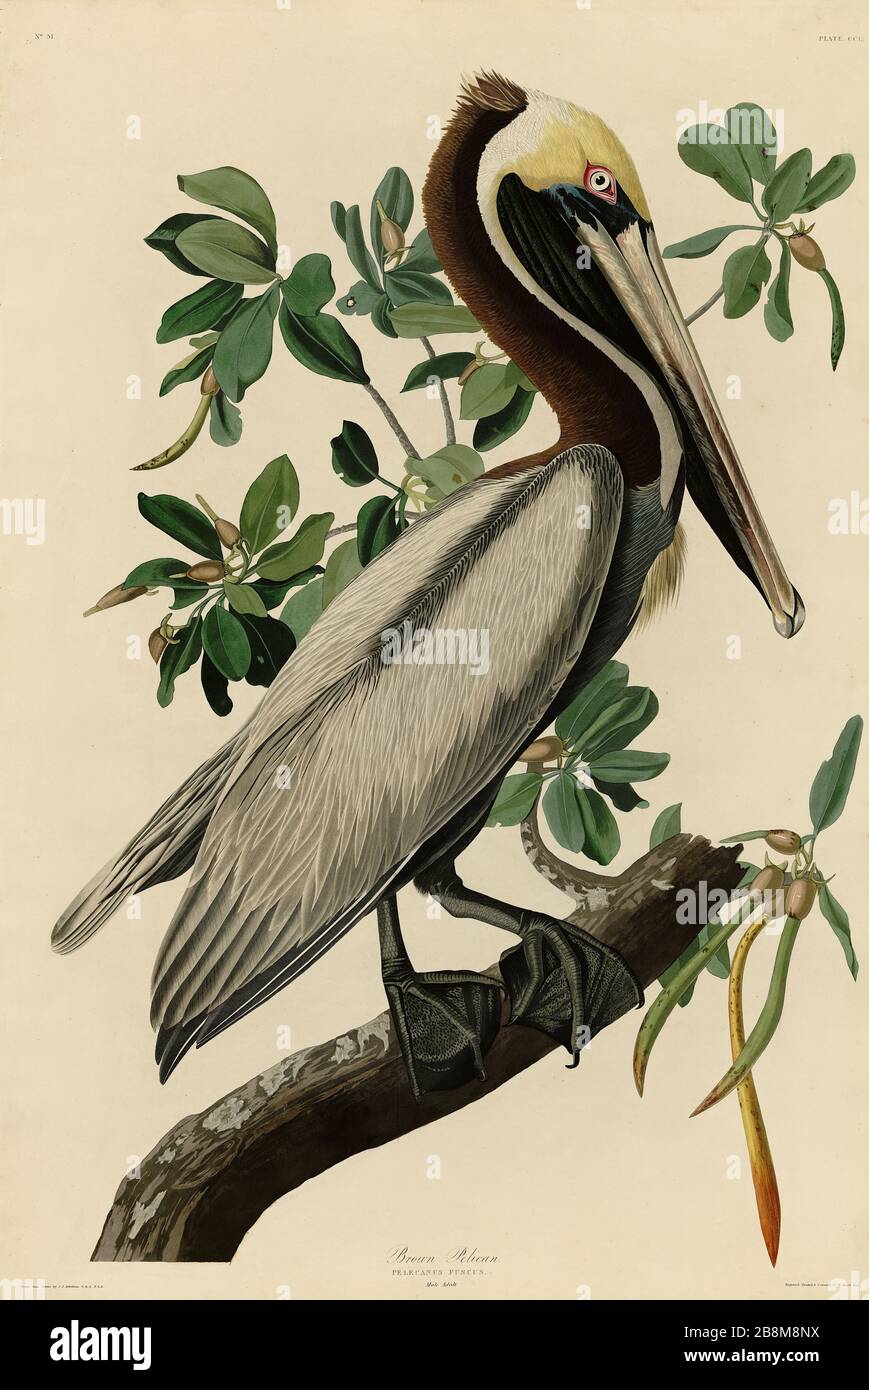 Plaque 251 Pelican brun, du folio Birds of America (1827–1839) de John James Audubon - image éditée de très haute résolution et de qualité Banque D'Images